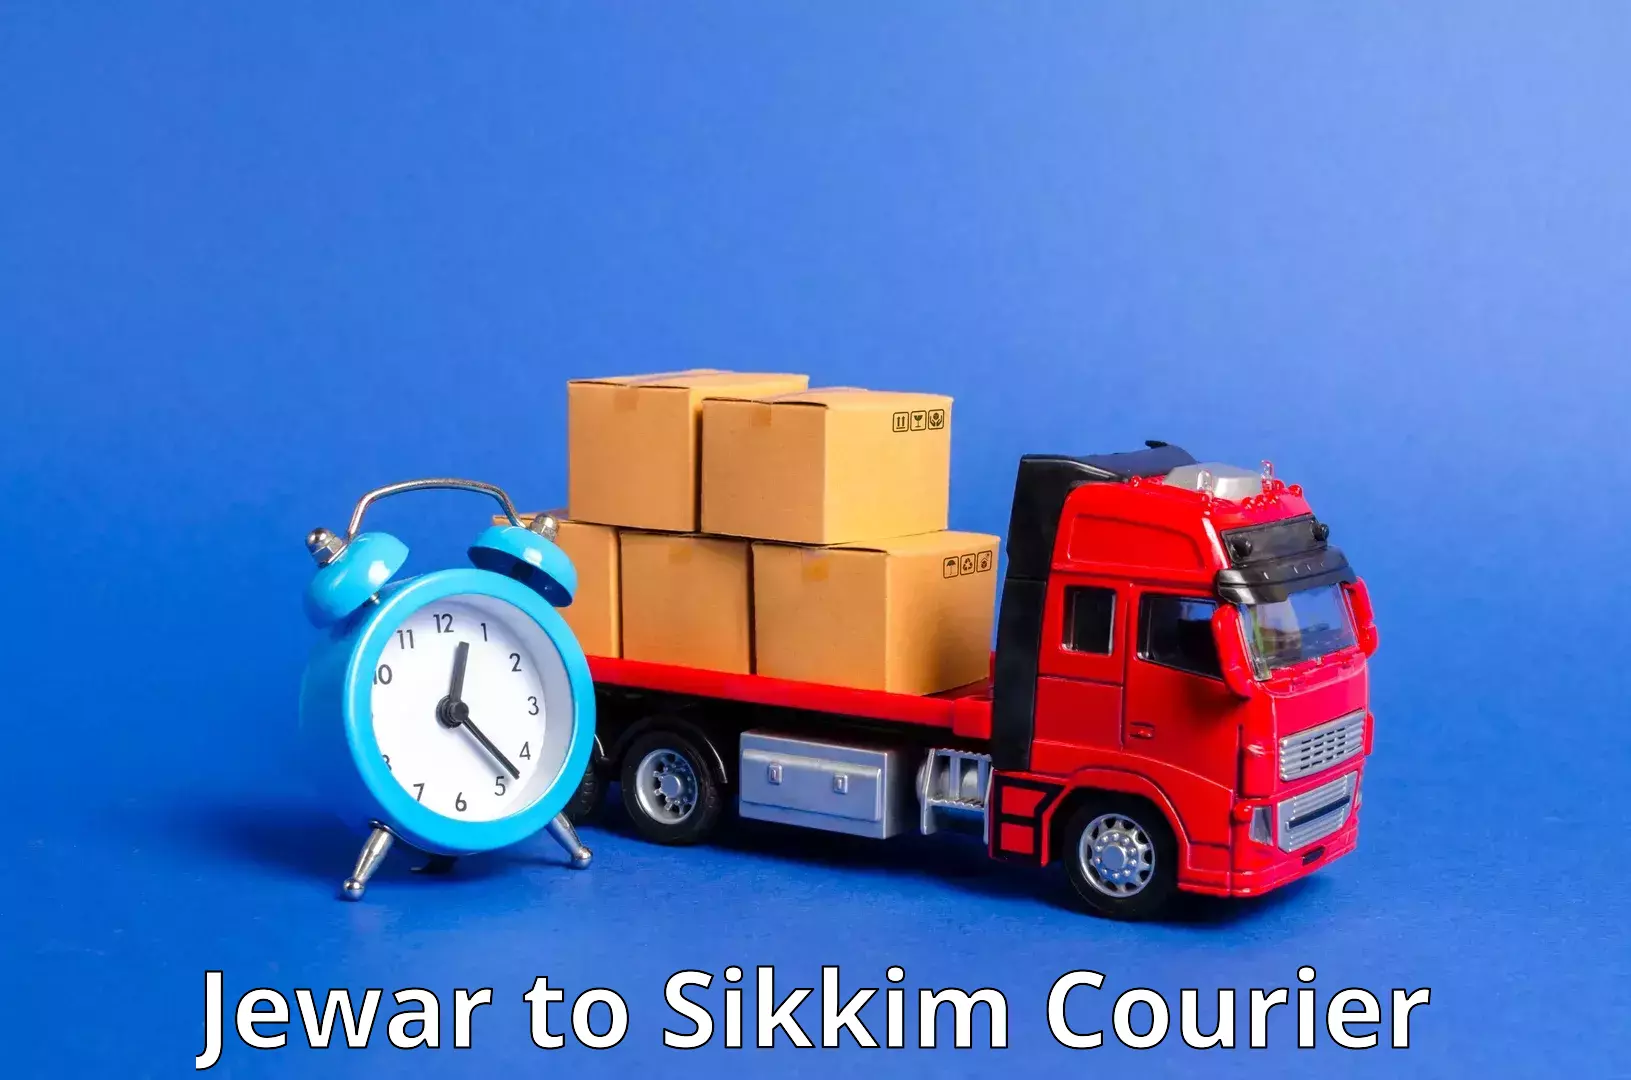 Urban courier service Jewar to West Sikkim